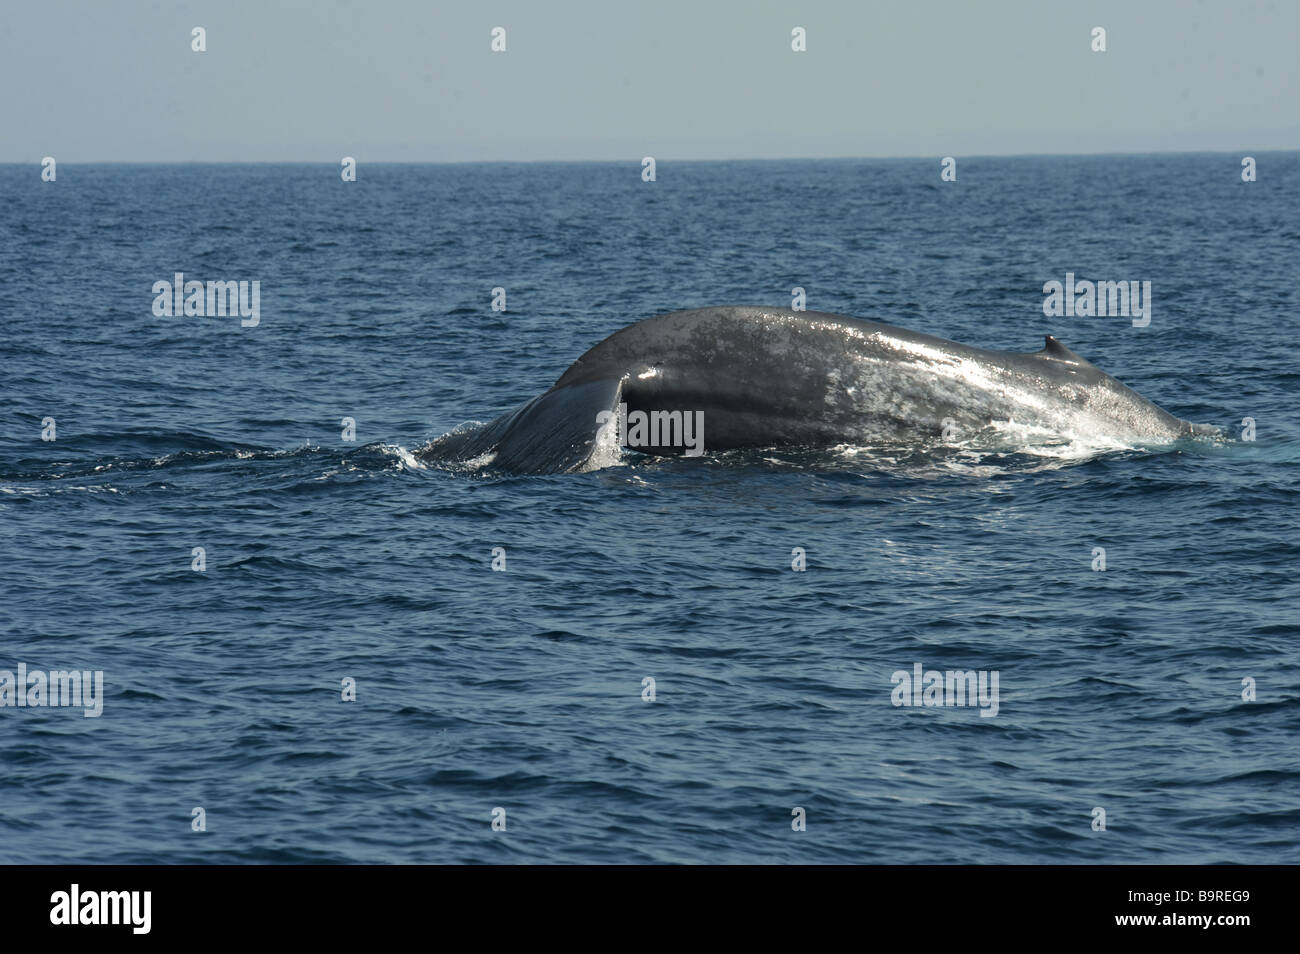 La baleine bleue sur la surface à propos de Sound, queue levée Balaenoptera musculus brevicauda de l'Océan Indien, au large de l'Asie Sri Lanka Banque D'Images